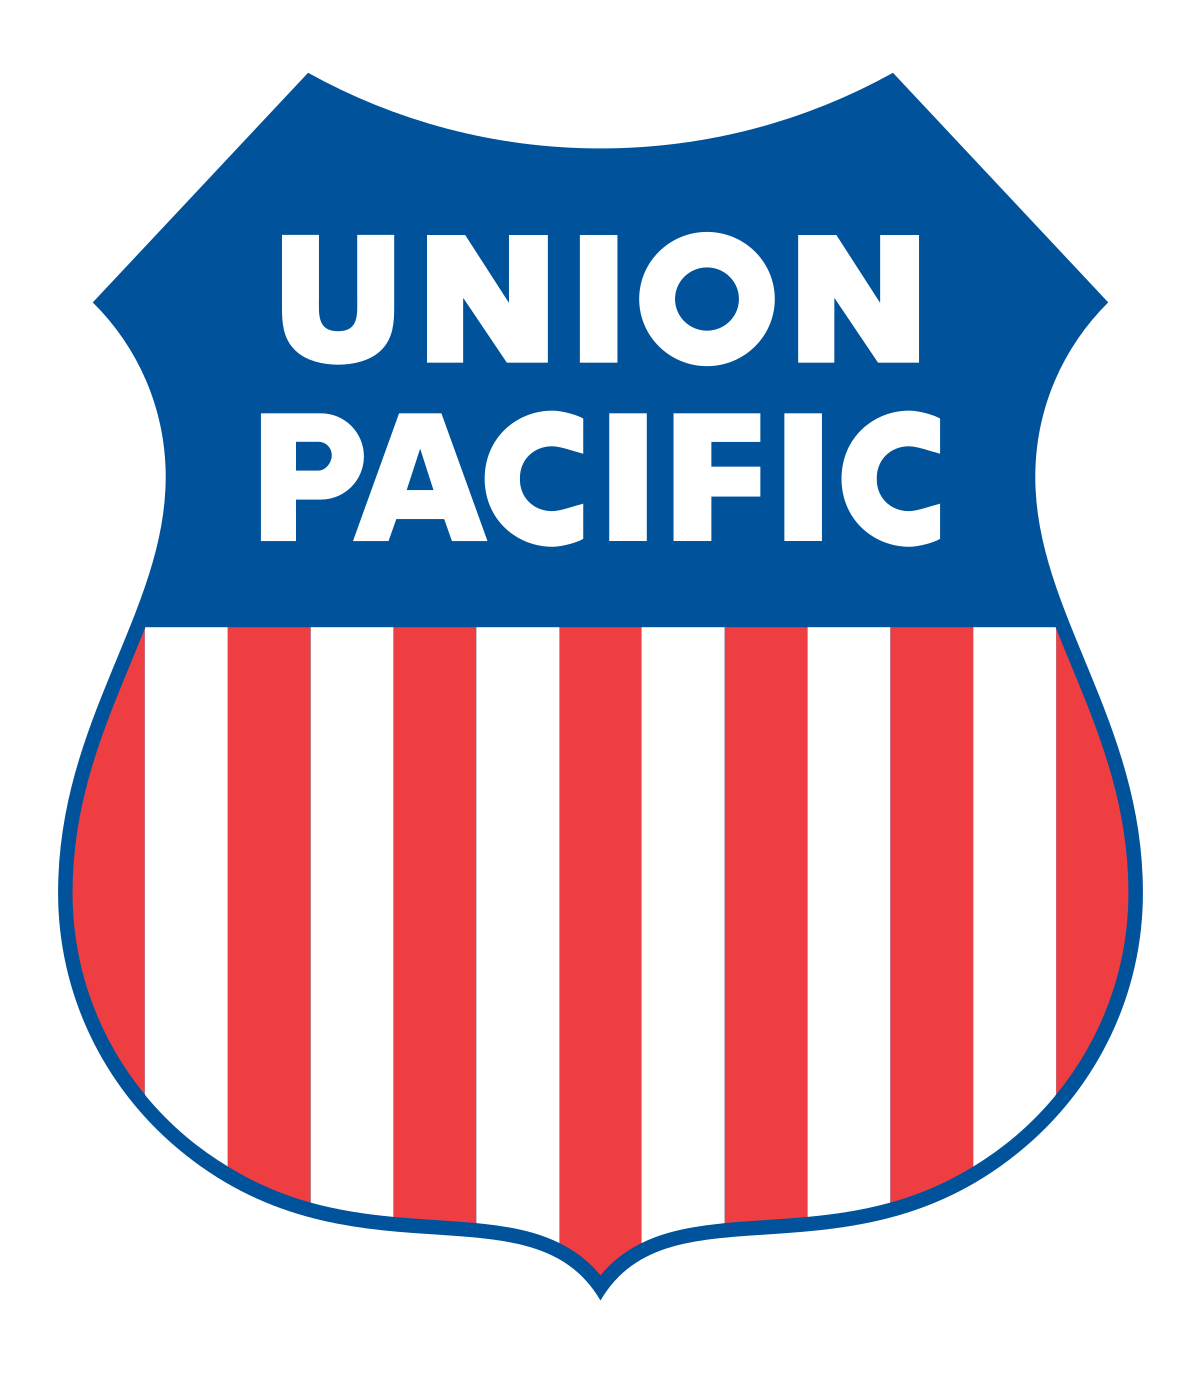 Railroad Company Logo - Union Pacific Railroad